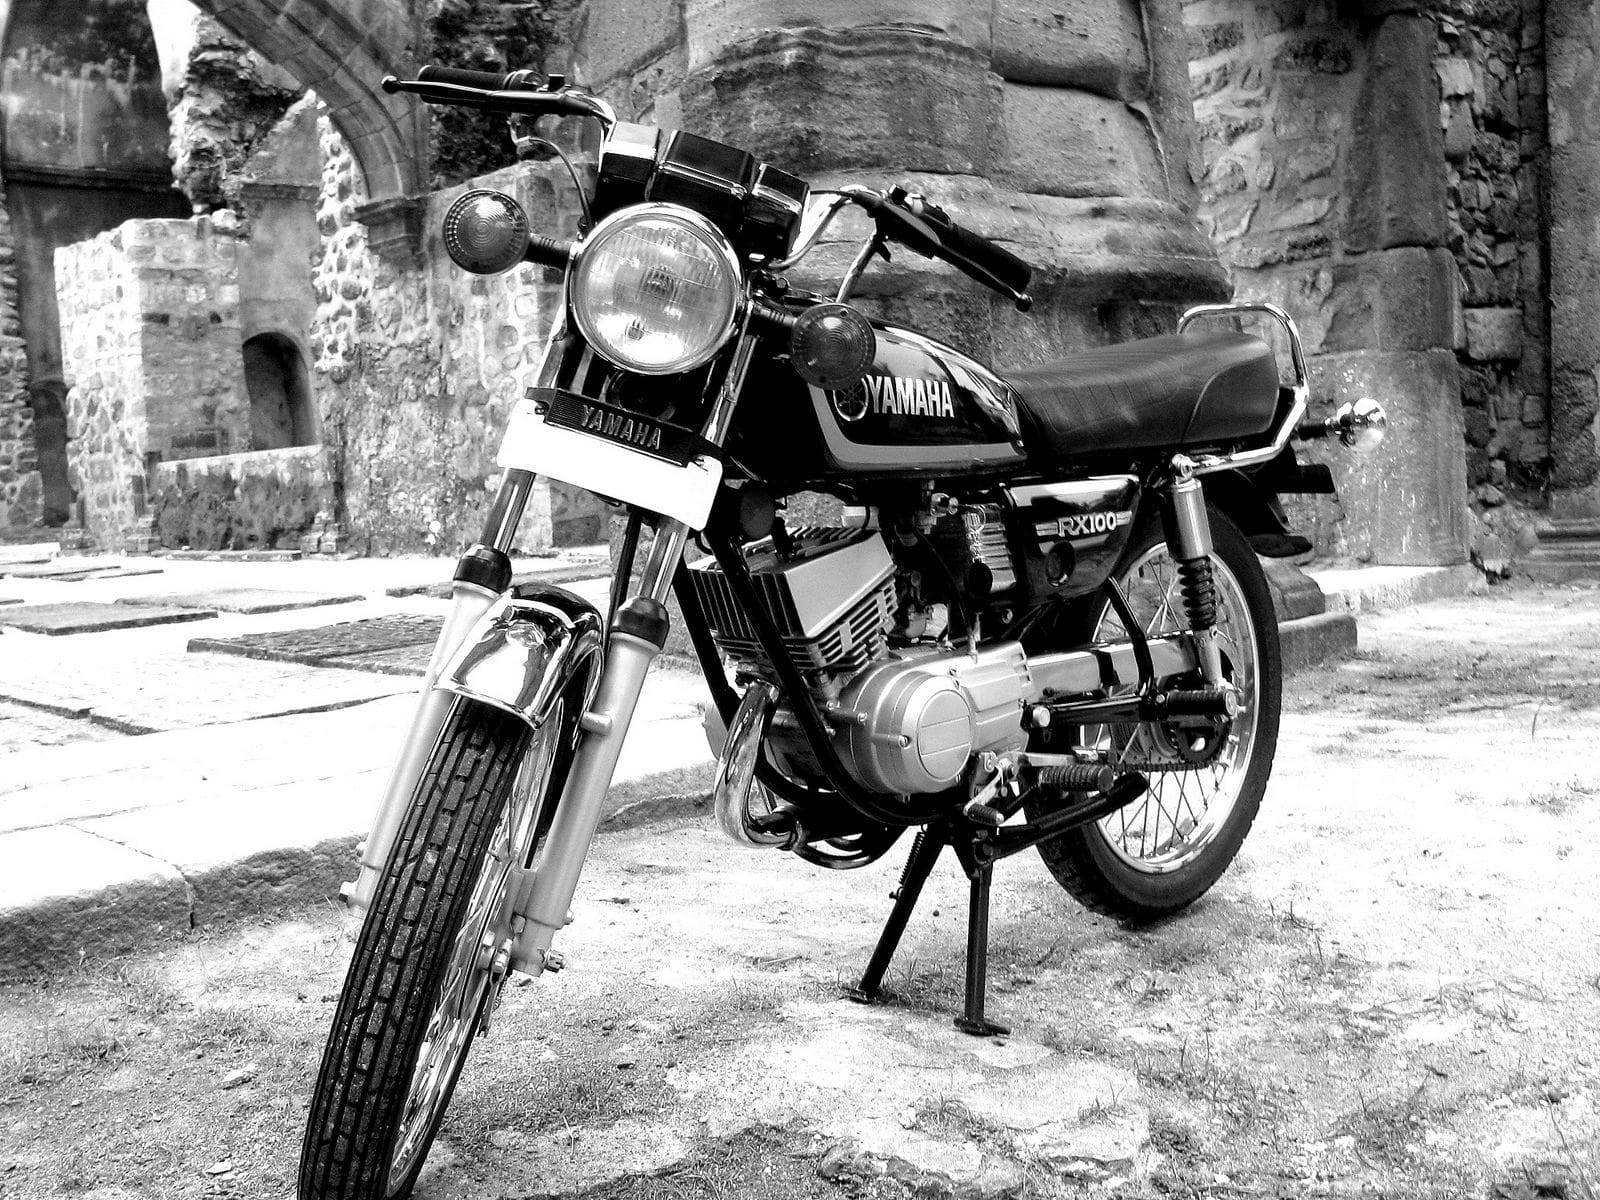 Motocicletayamaha Rx100 Preta E Branca. Papel de Parede